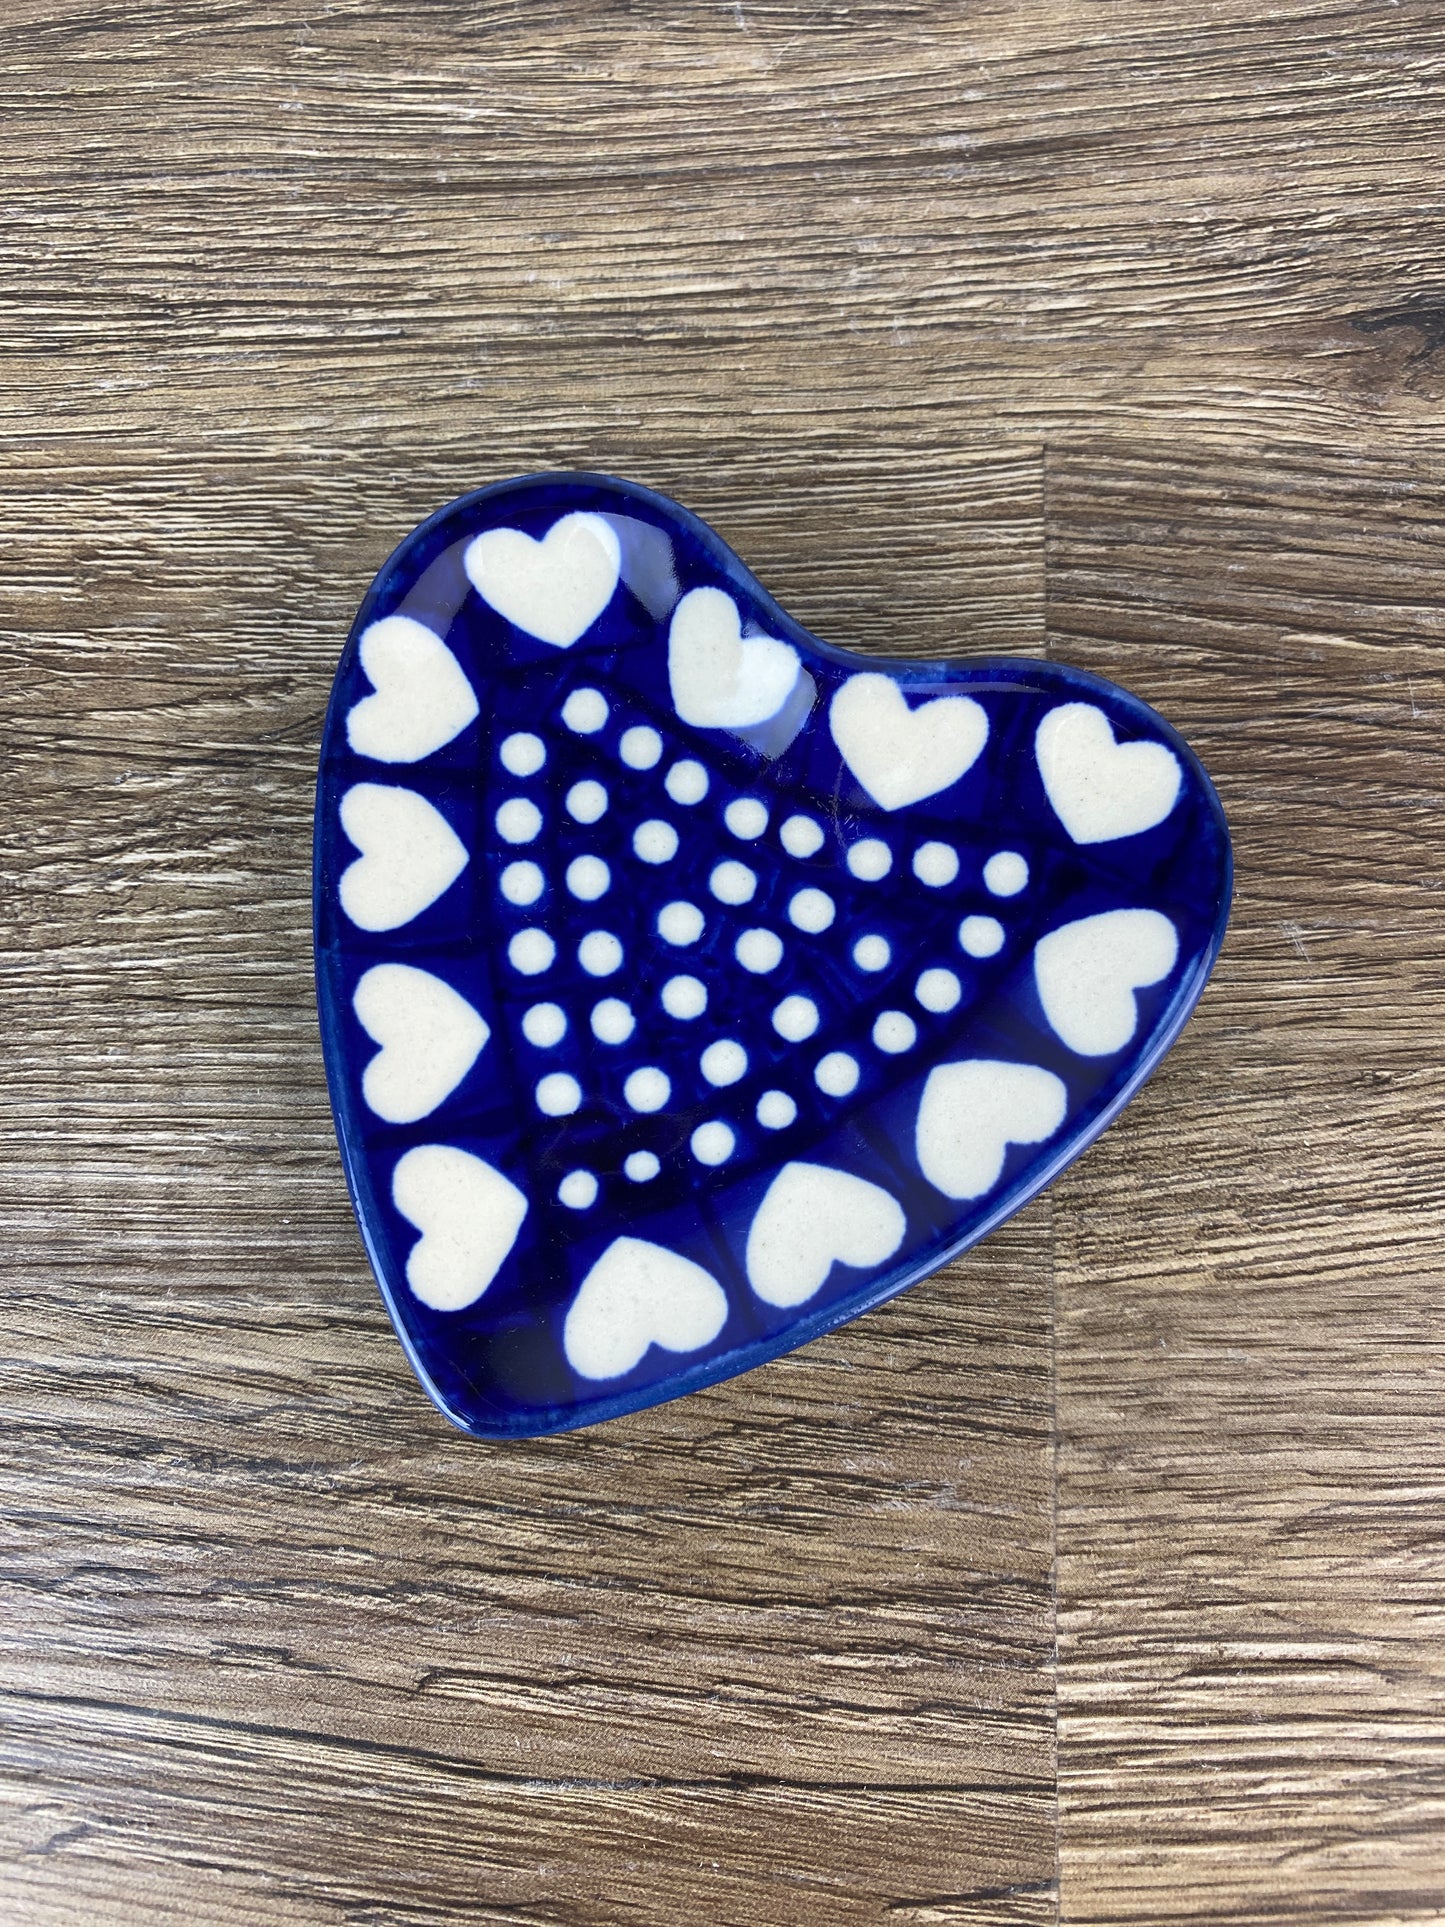 Heart Shaped Dish - Shape B49 - Pattern 375E